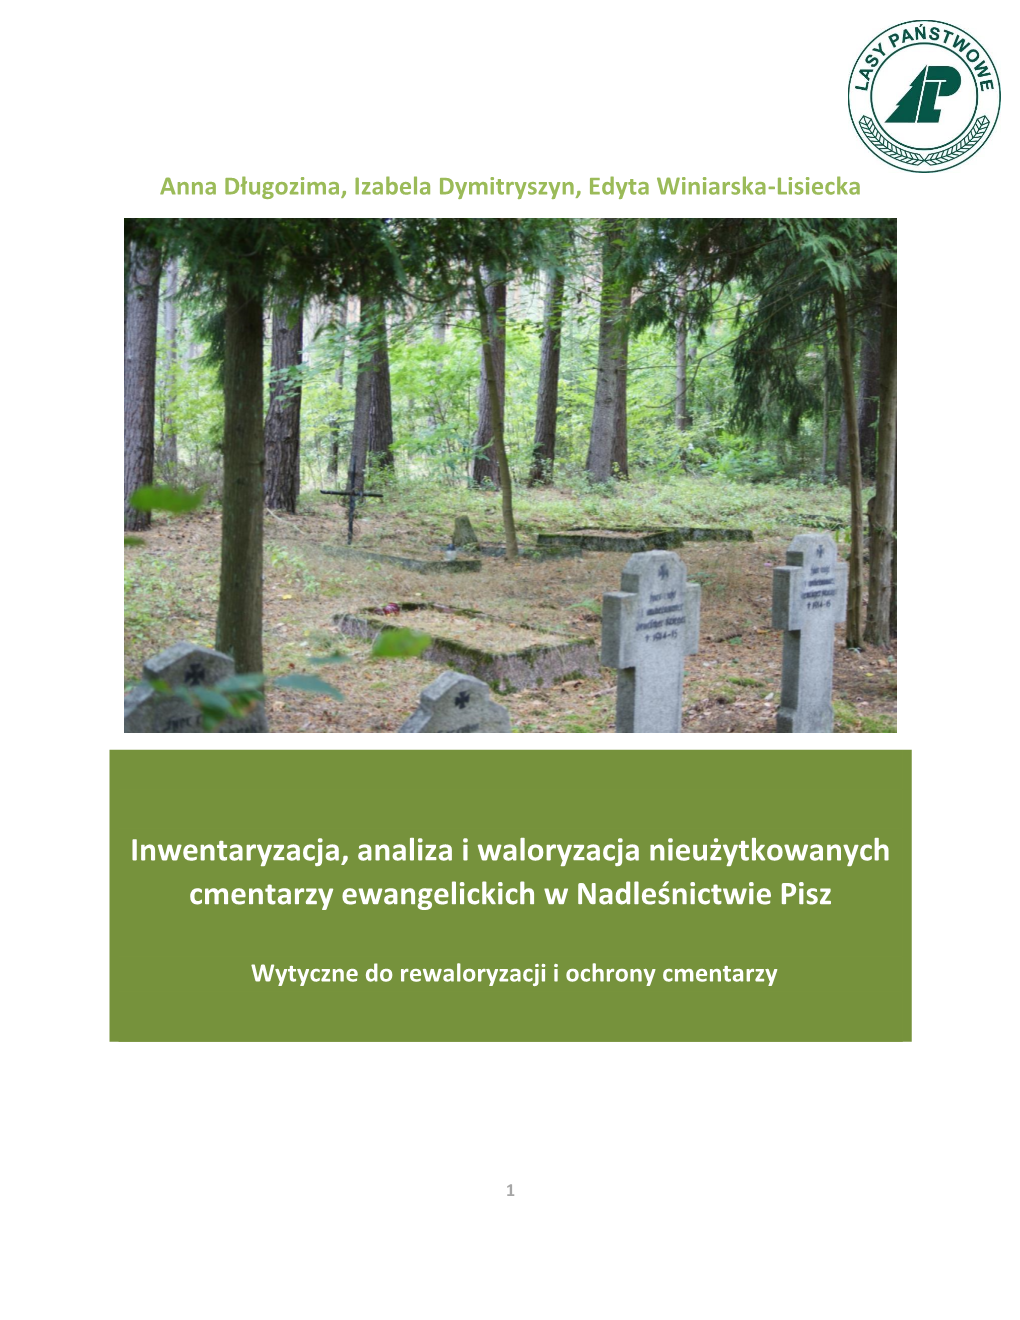 Inwentaryzacja, Analiza I Waloryzacja Nieużytkowanych Cmentarzy Ewangelickich W Nadleśnictwie Pisz